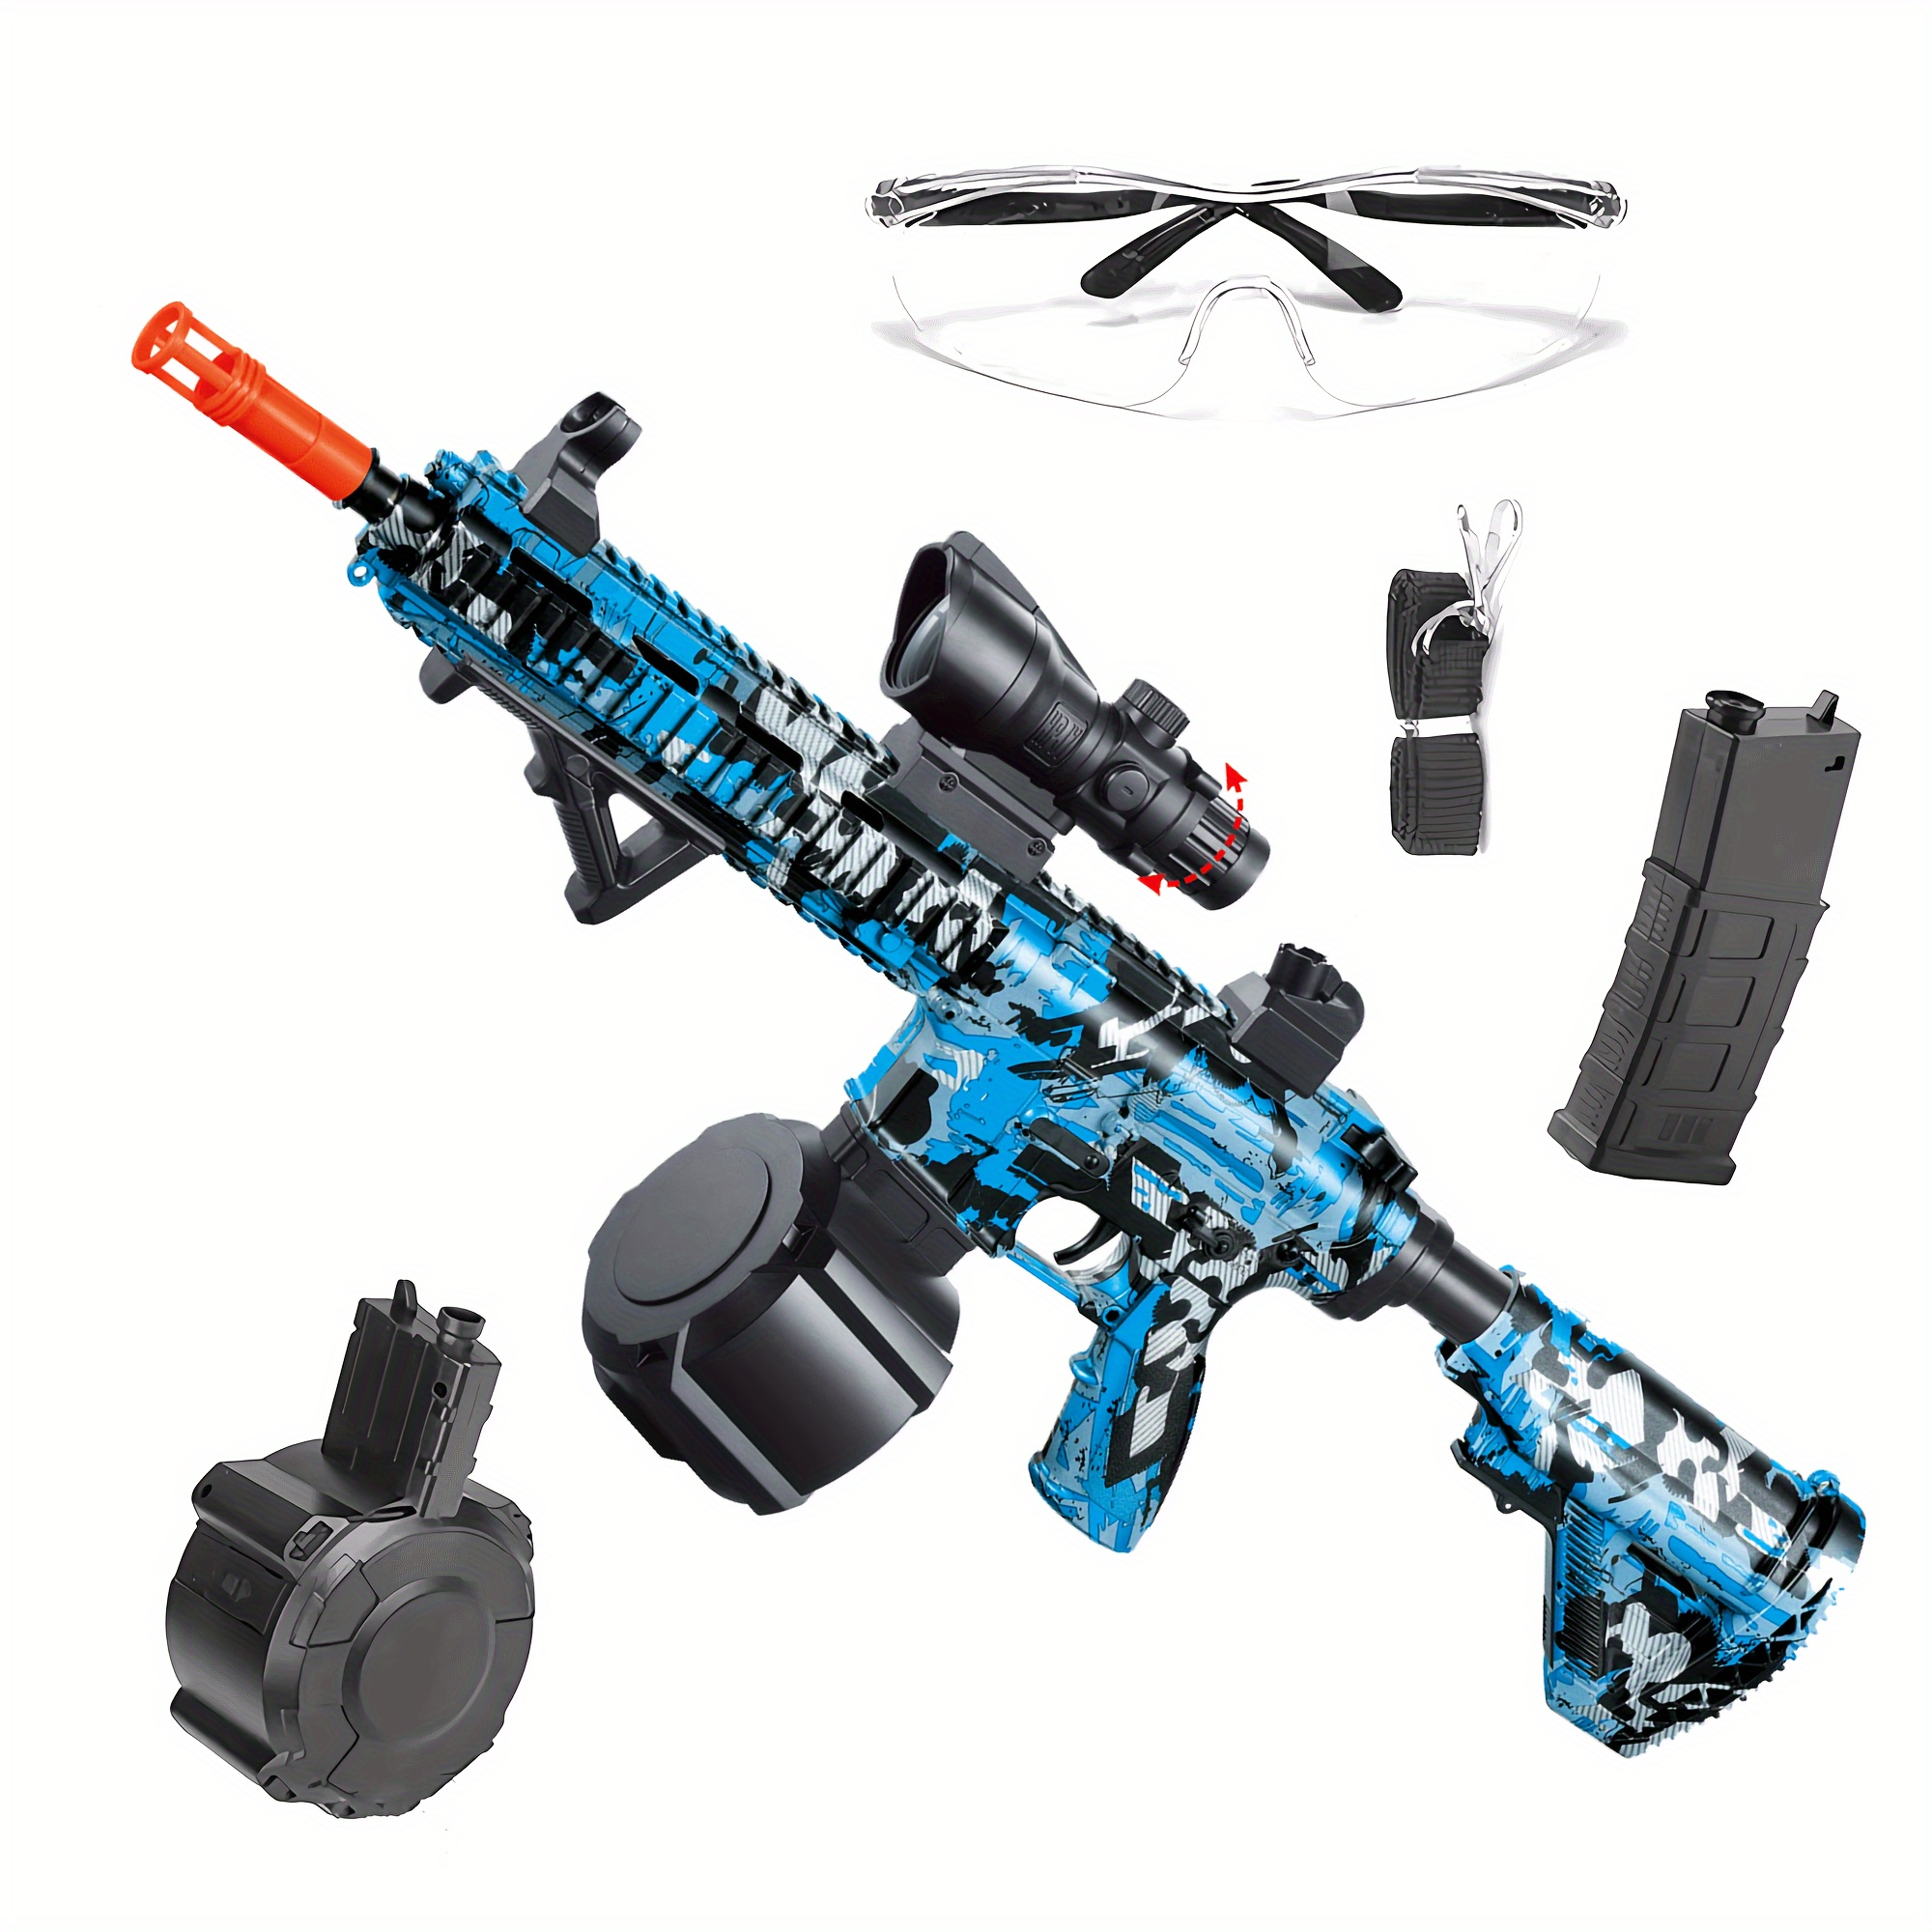  Pistola de bolas de gel AKM-47 grande – 200 FPS y dispara hasta  100 pies, doble modo de disparo, adecuado para adultos, azul : Juguetes y  Juegos